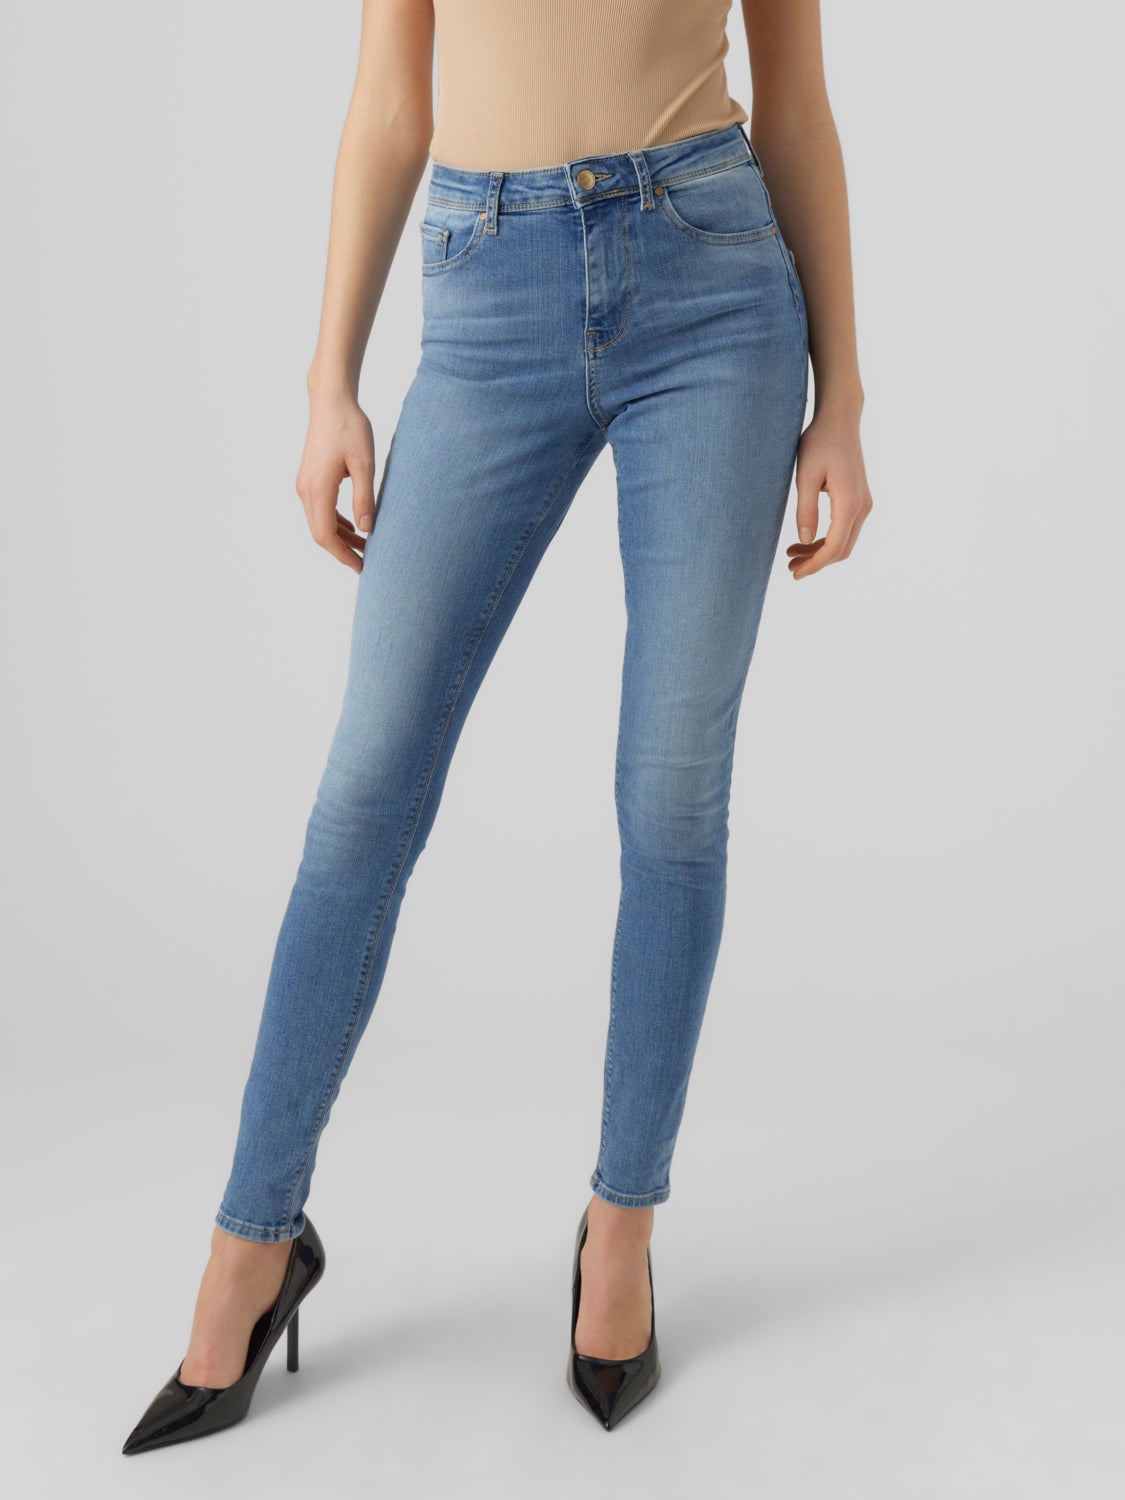 VMSOPHIA Jeans with 40% discount! Vero | Moda®